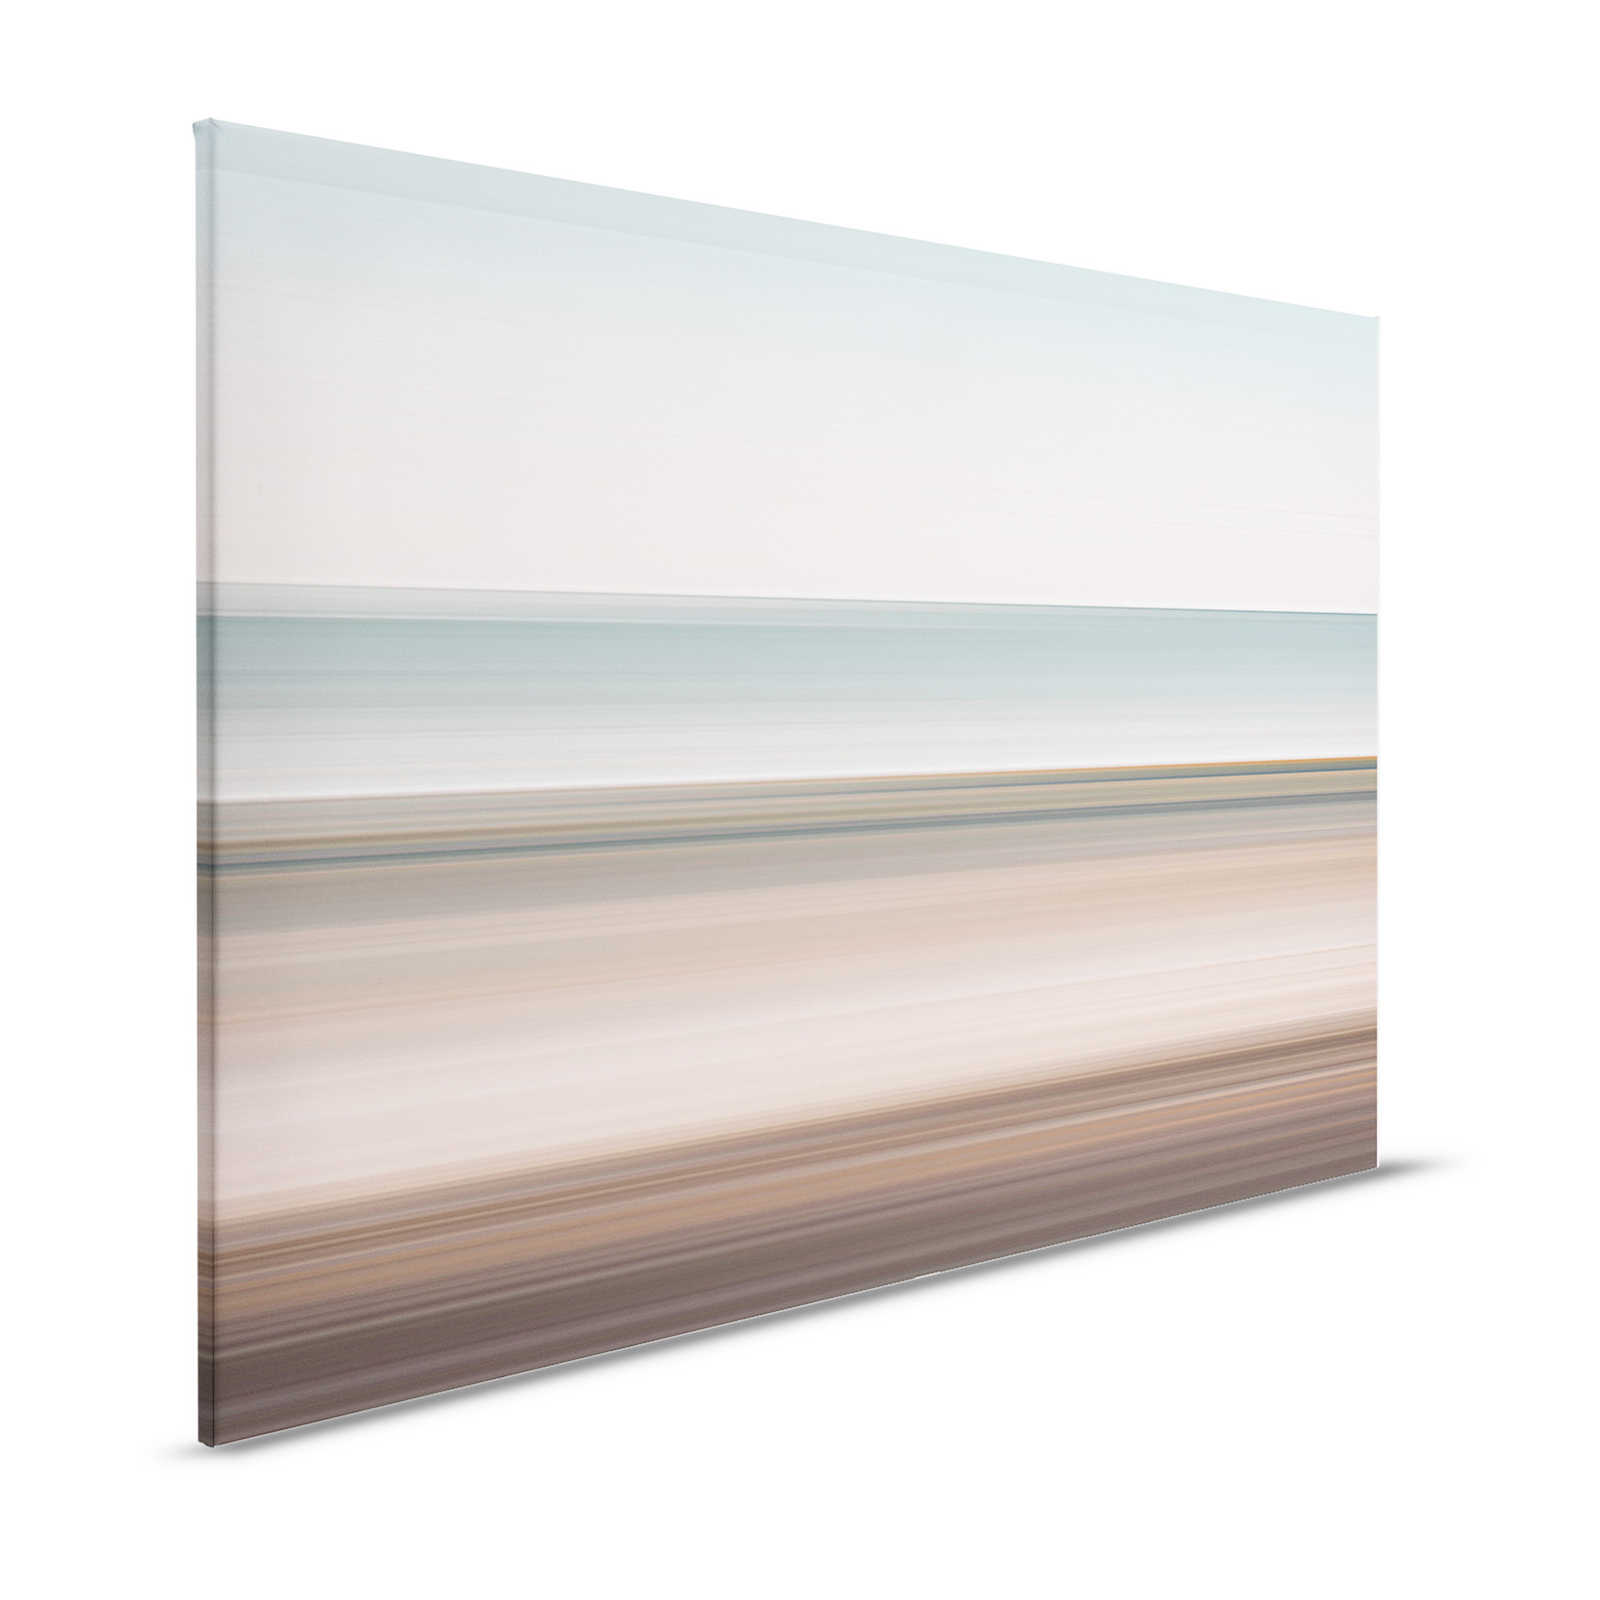 Horizon 2 - Quadro su tela con paesaggio astratto e linee - 1,20 m x 0,80 m
